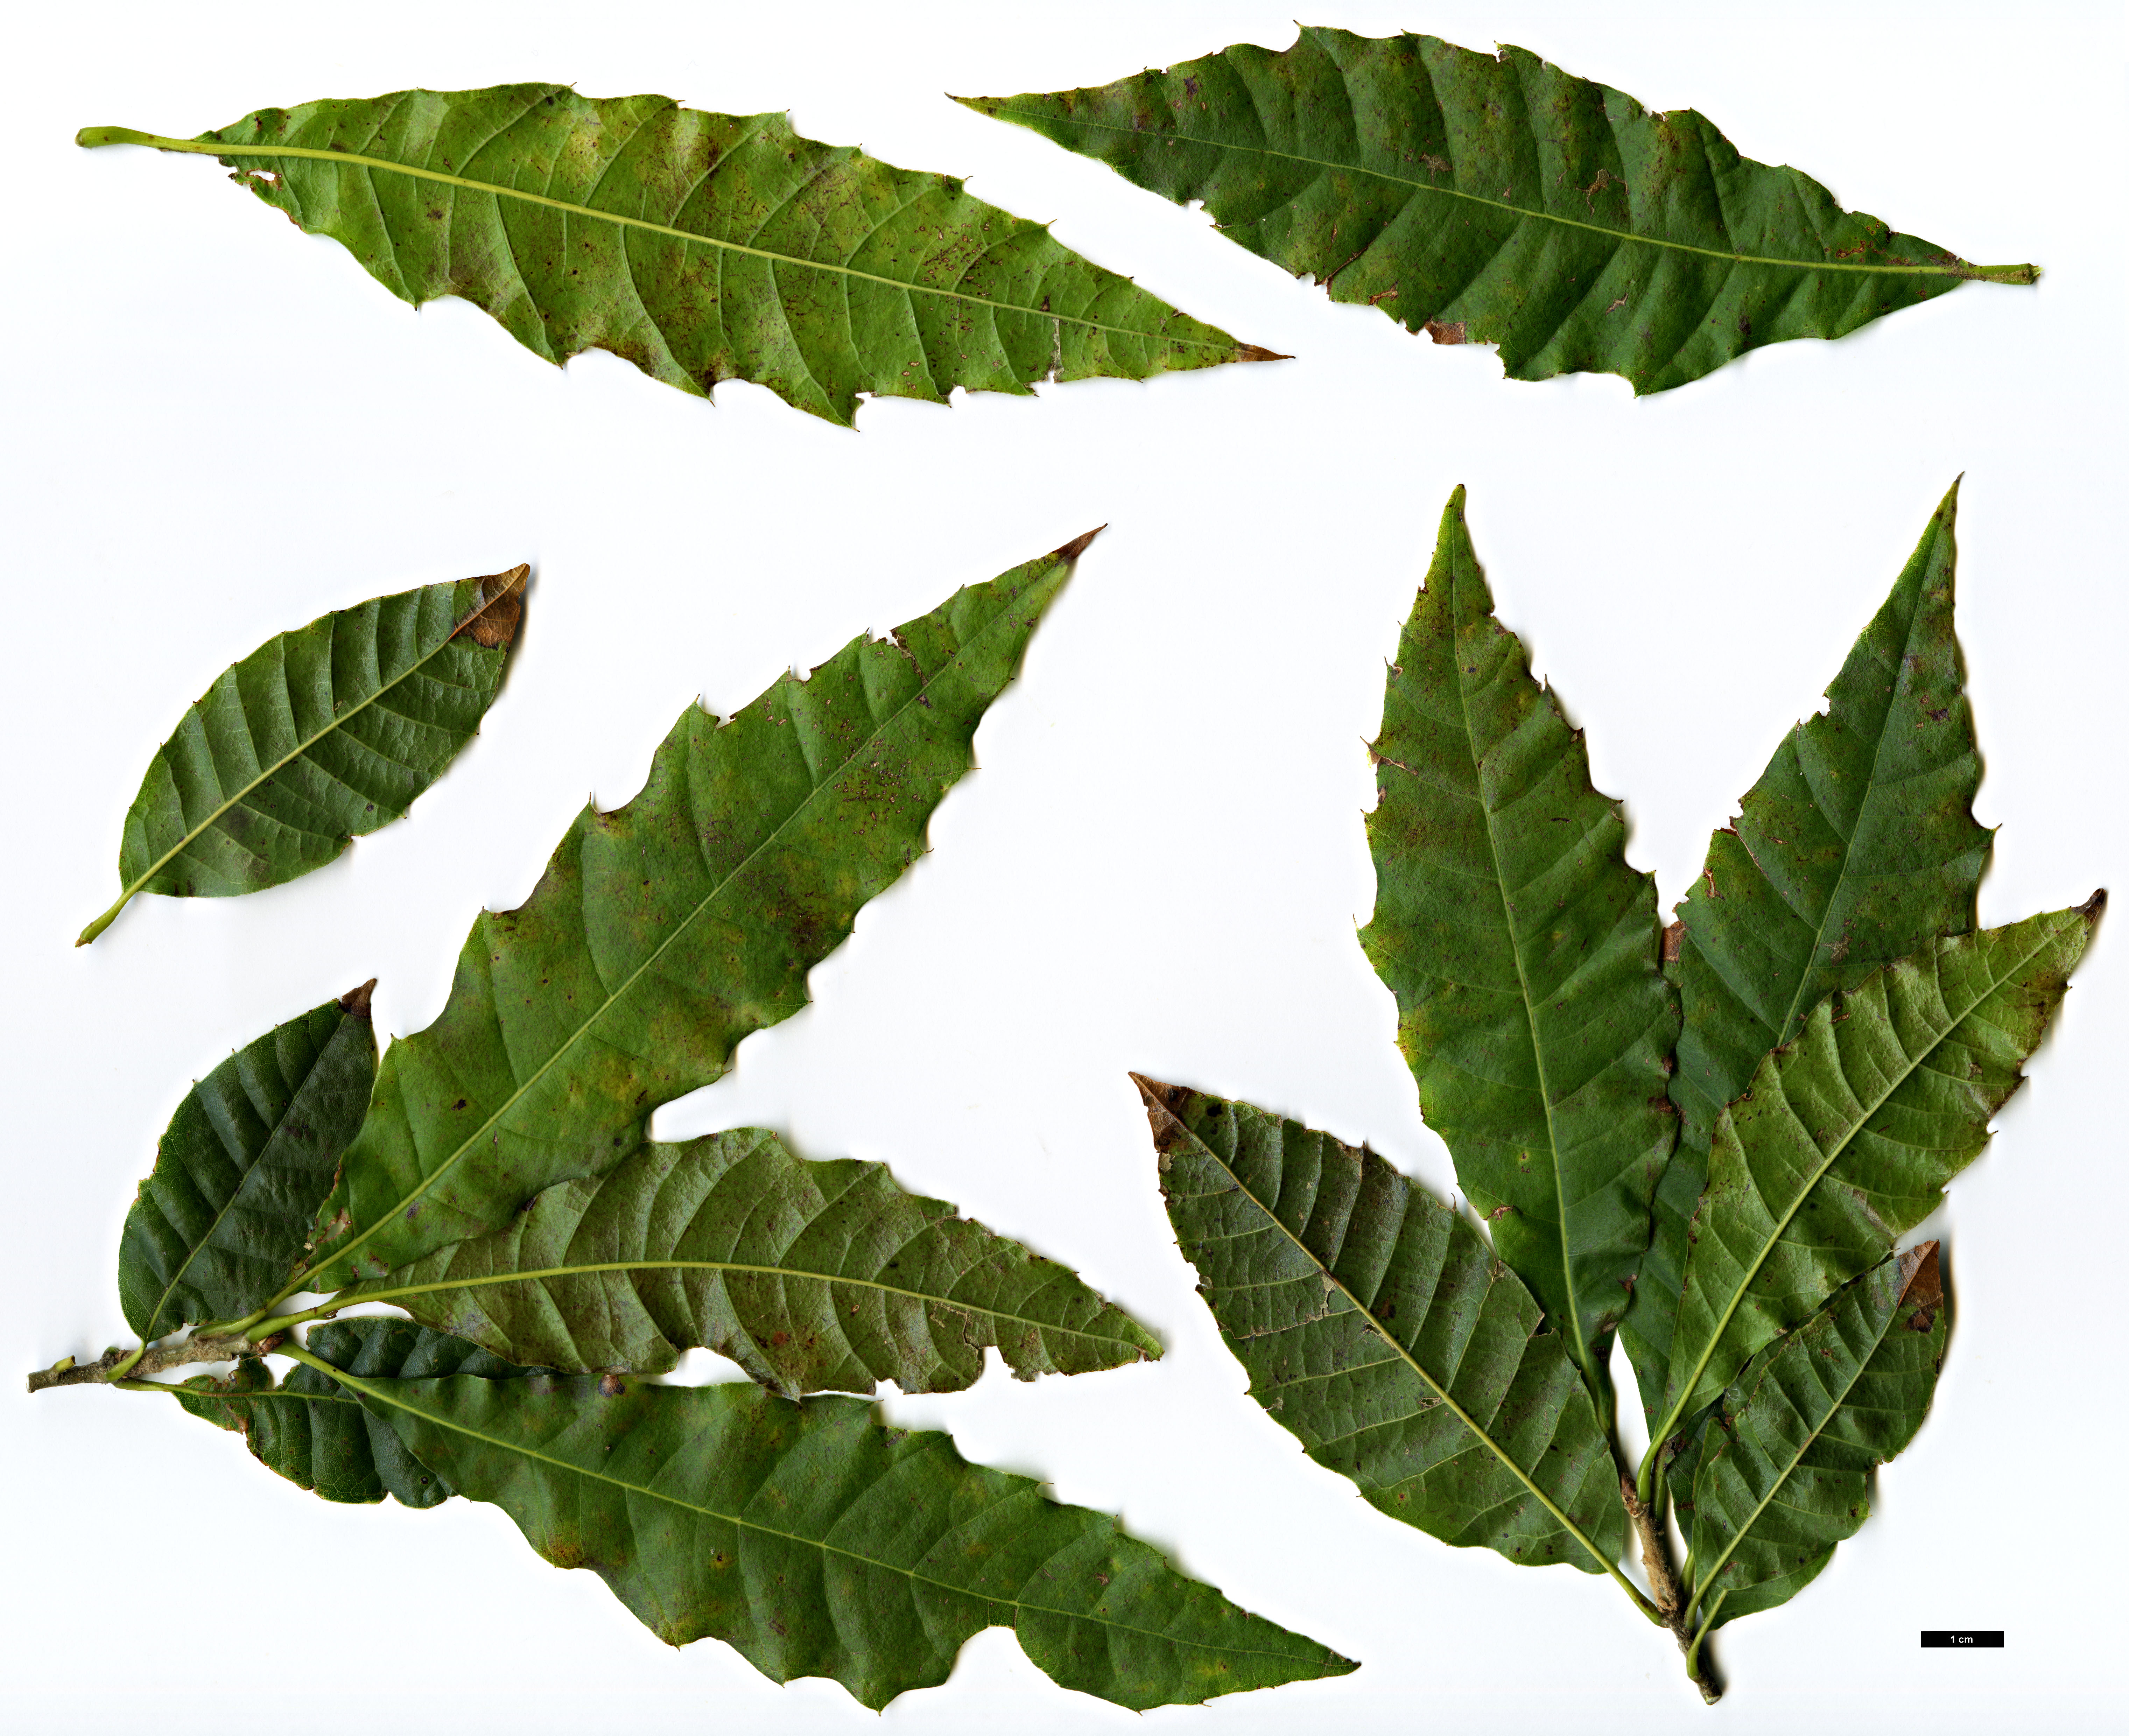 High resolution image: Family: Fagaceae - Genus: Quercus - Taxon: skinneri